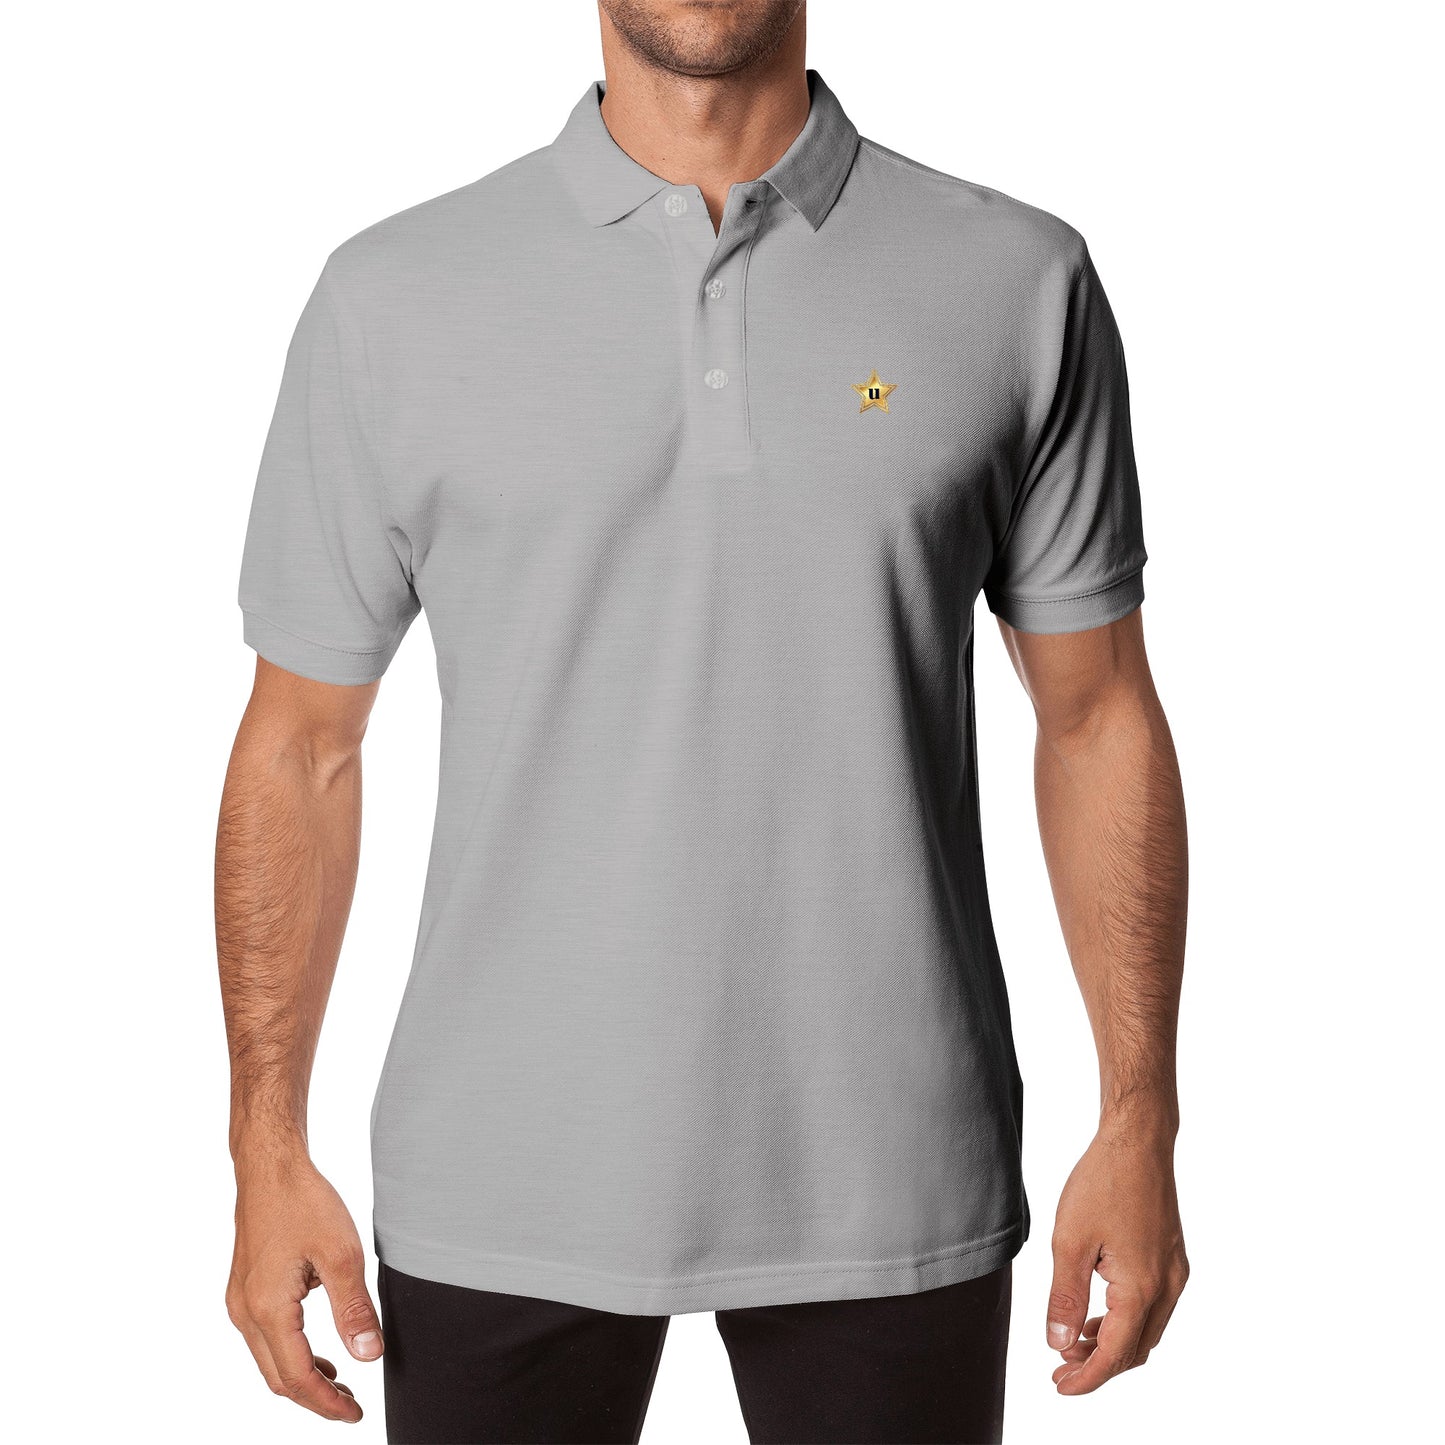 Men Half printed Cotton Polo Shirt